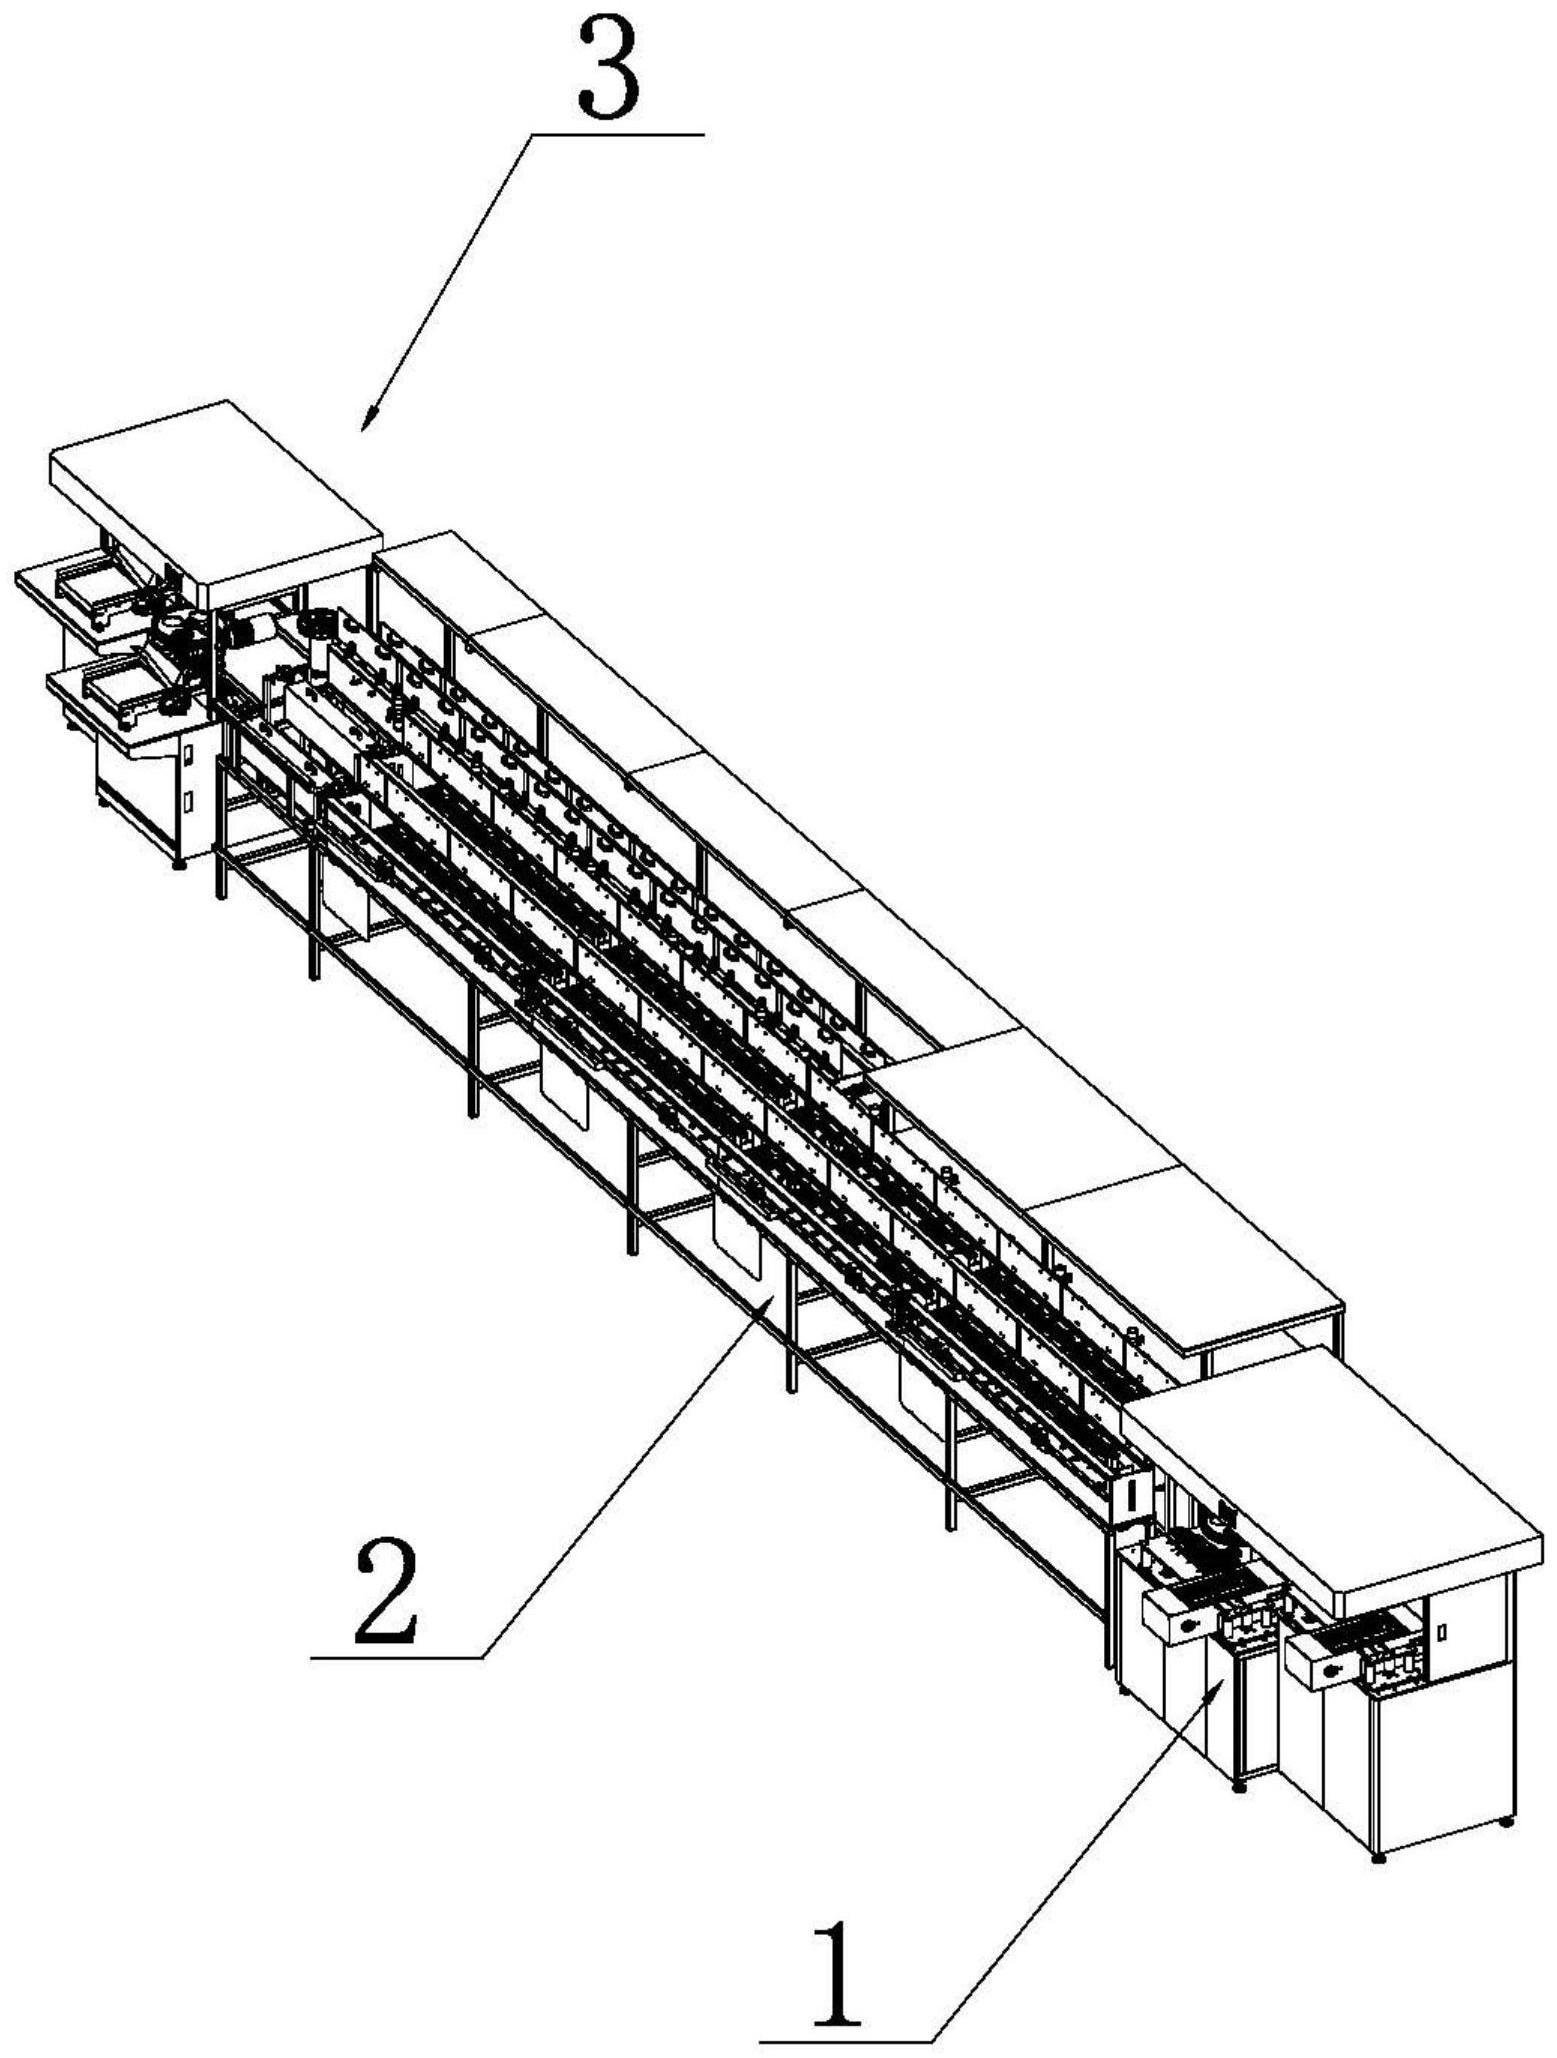 集成电路引线框架的台阶式钢带设备的制作方法